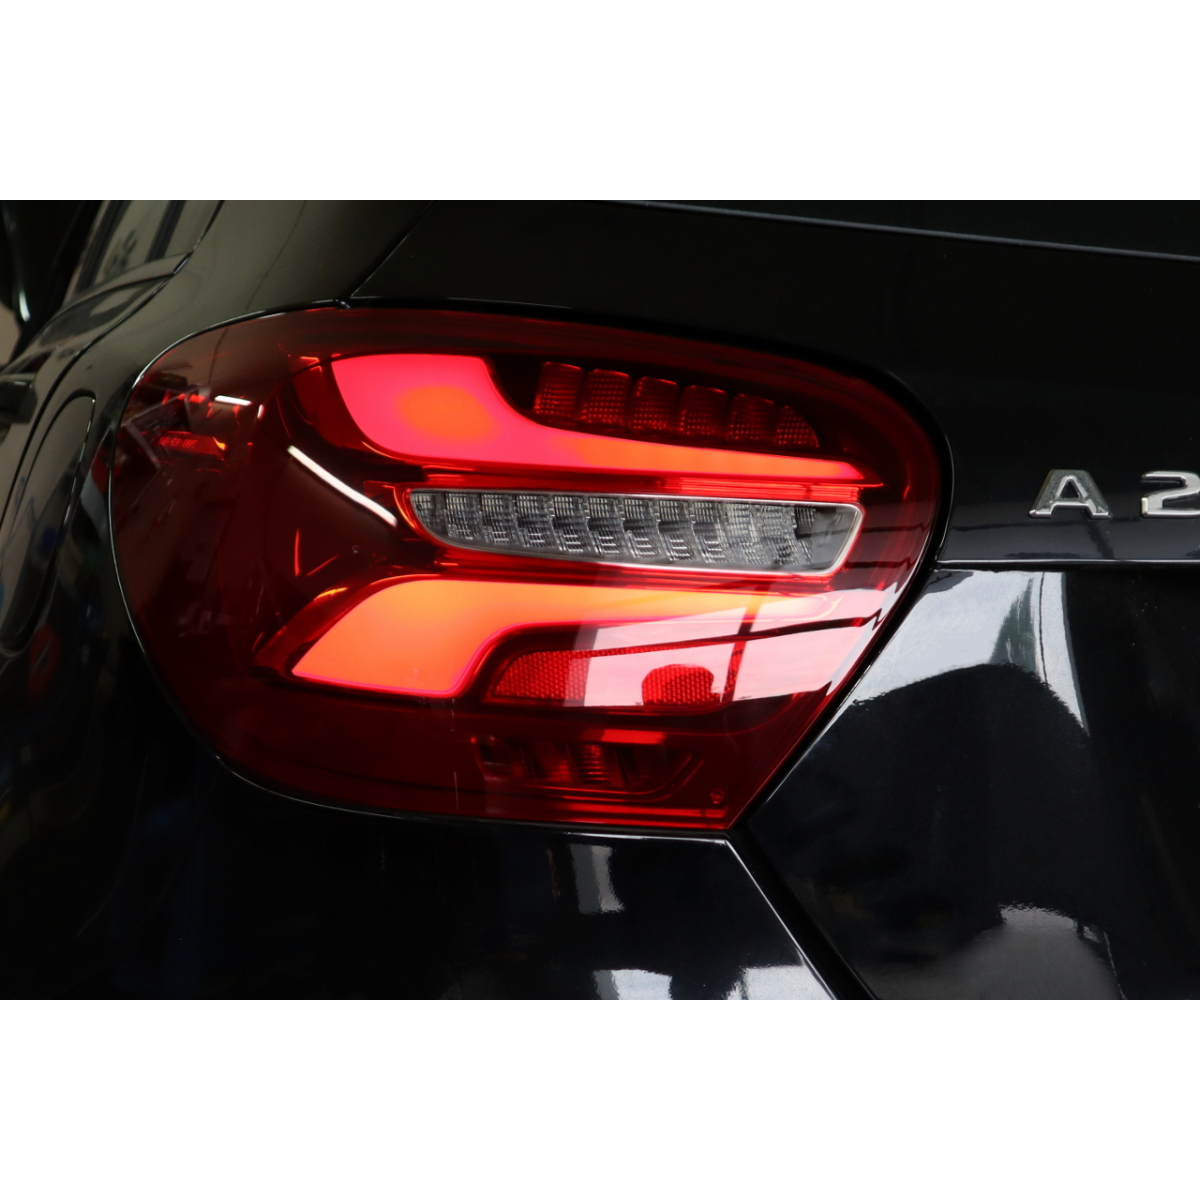 Fari LED posteriori facelift - Retrofit kit - Mercedes A-Class W176 con  fari anteriori alogeni - Navistore